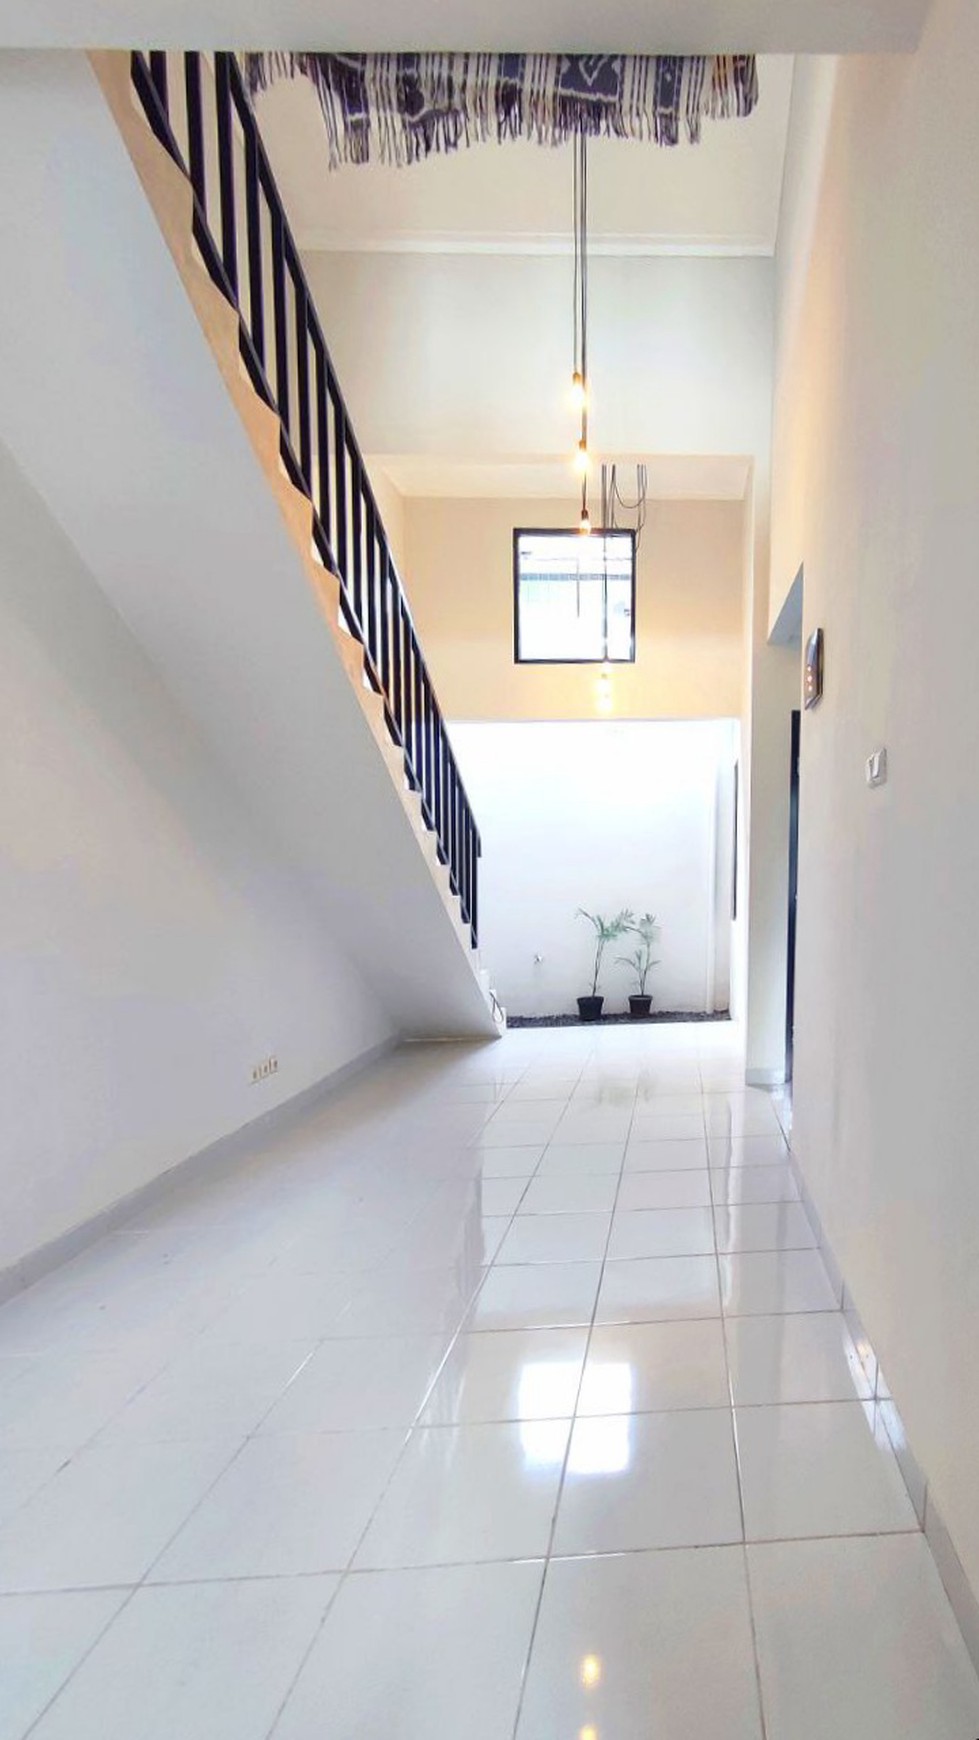 Rumah Cantik Minimalis  di Permata Bintaro Luas 72m2 Harga 1.6M Nego sampai Deal